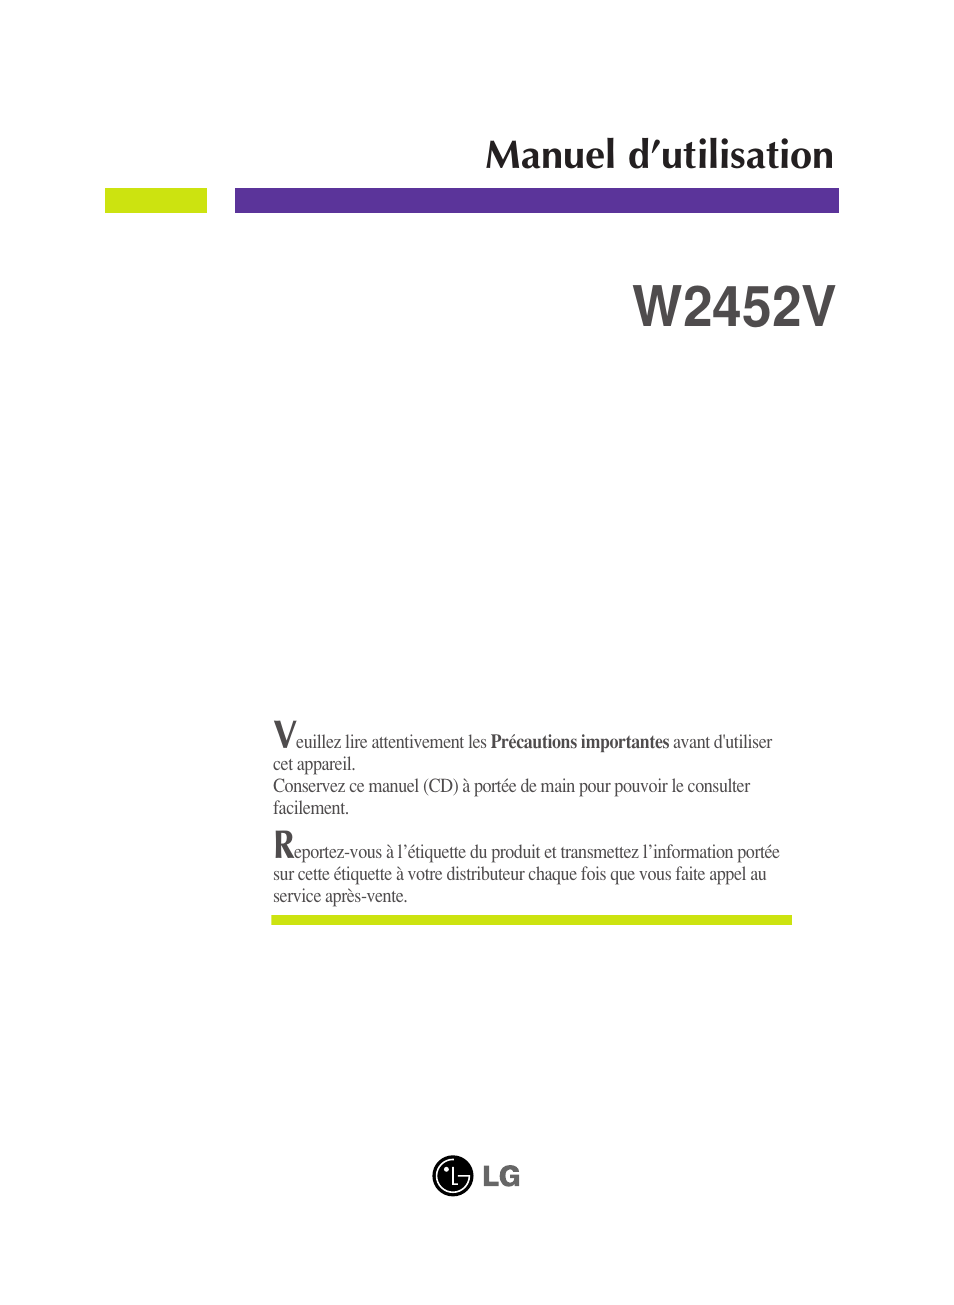 LG W2452V-PF Manuel d'utilisation | Pages: 27